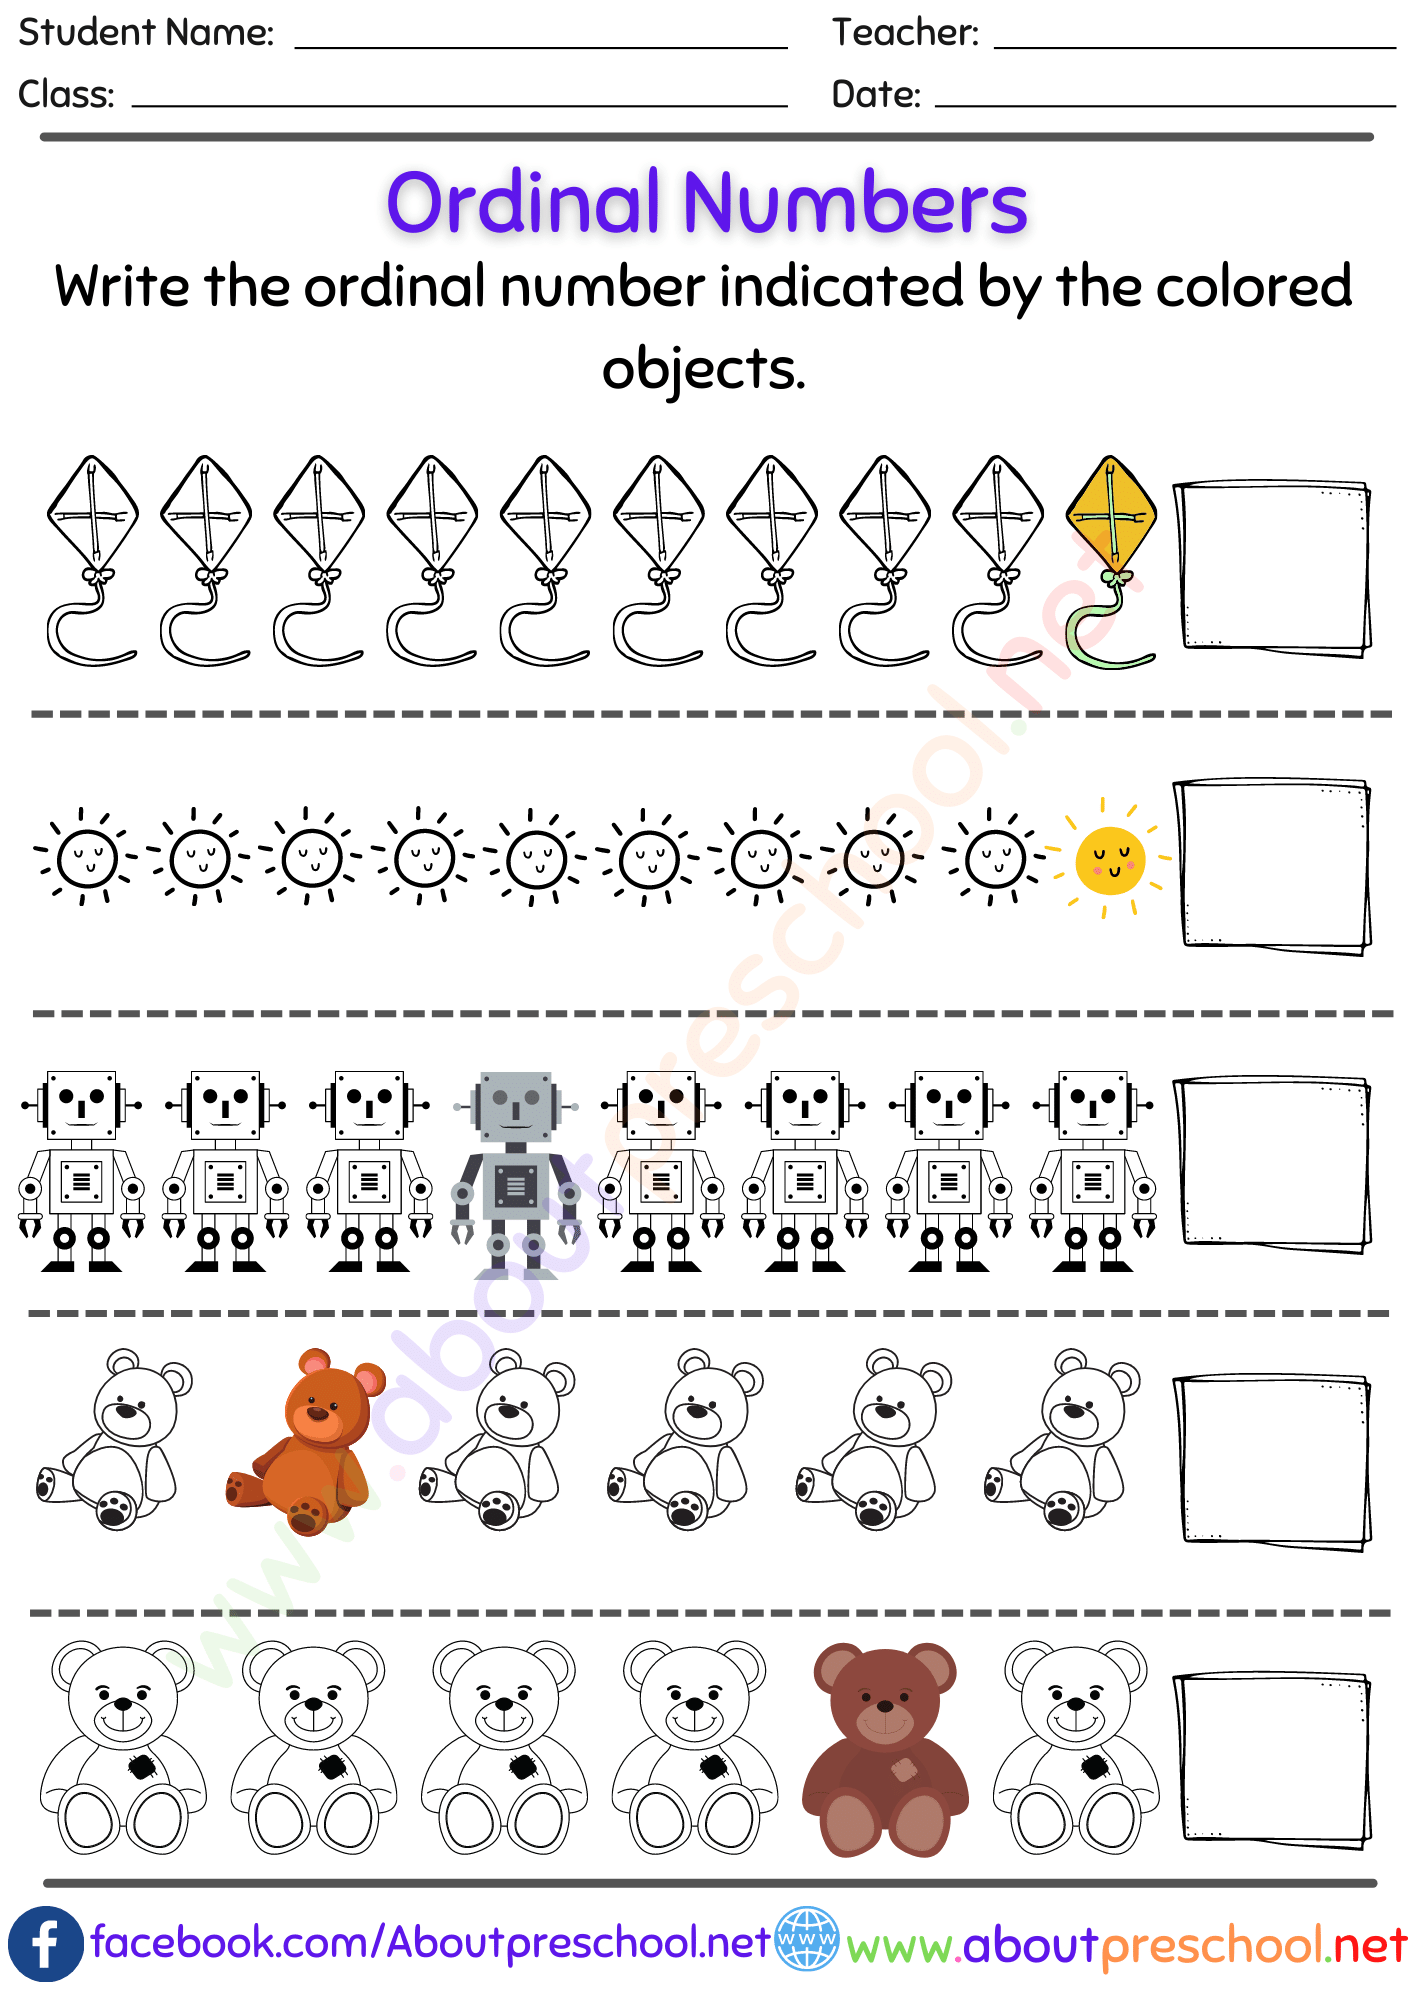 Kindergarten or Grade 1 Ordinal Numbers Worksheet